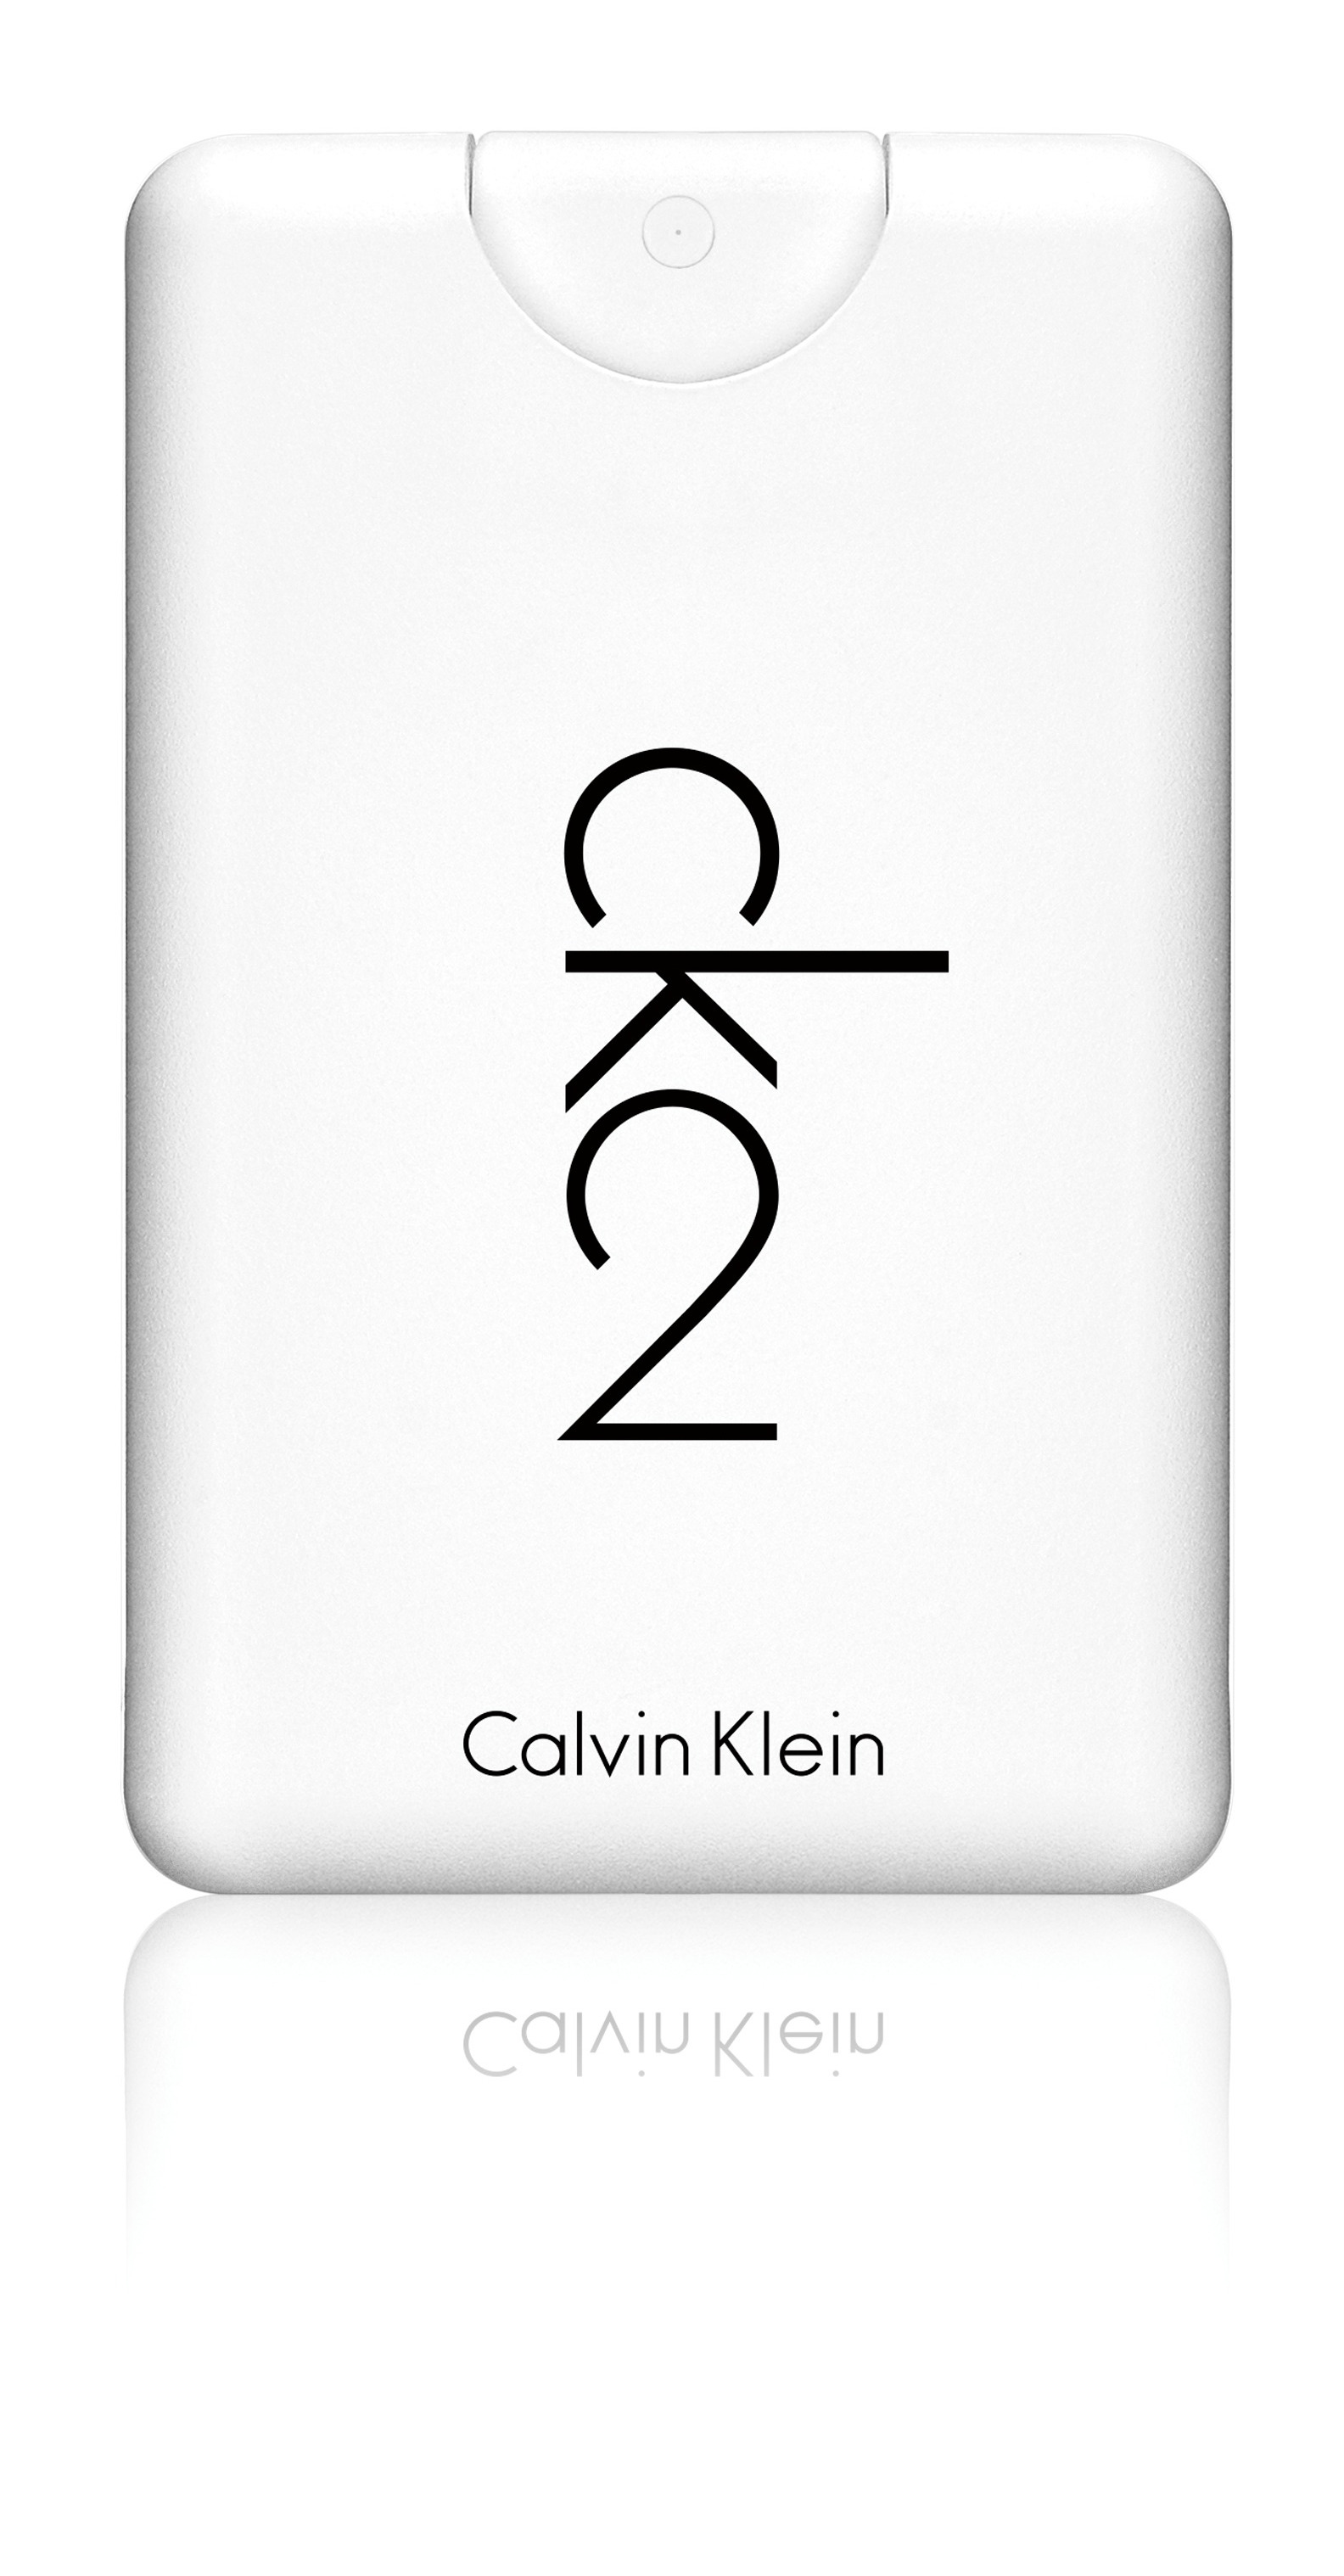 Calvin Klein ck2 profumo: il nuovo formato tascabile da portare sempre con sé